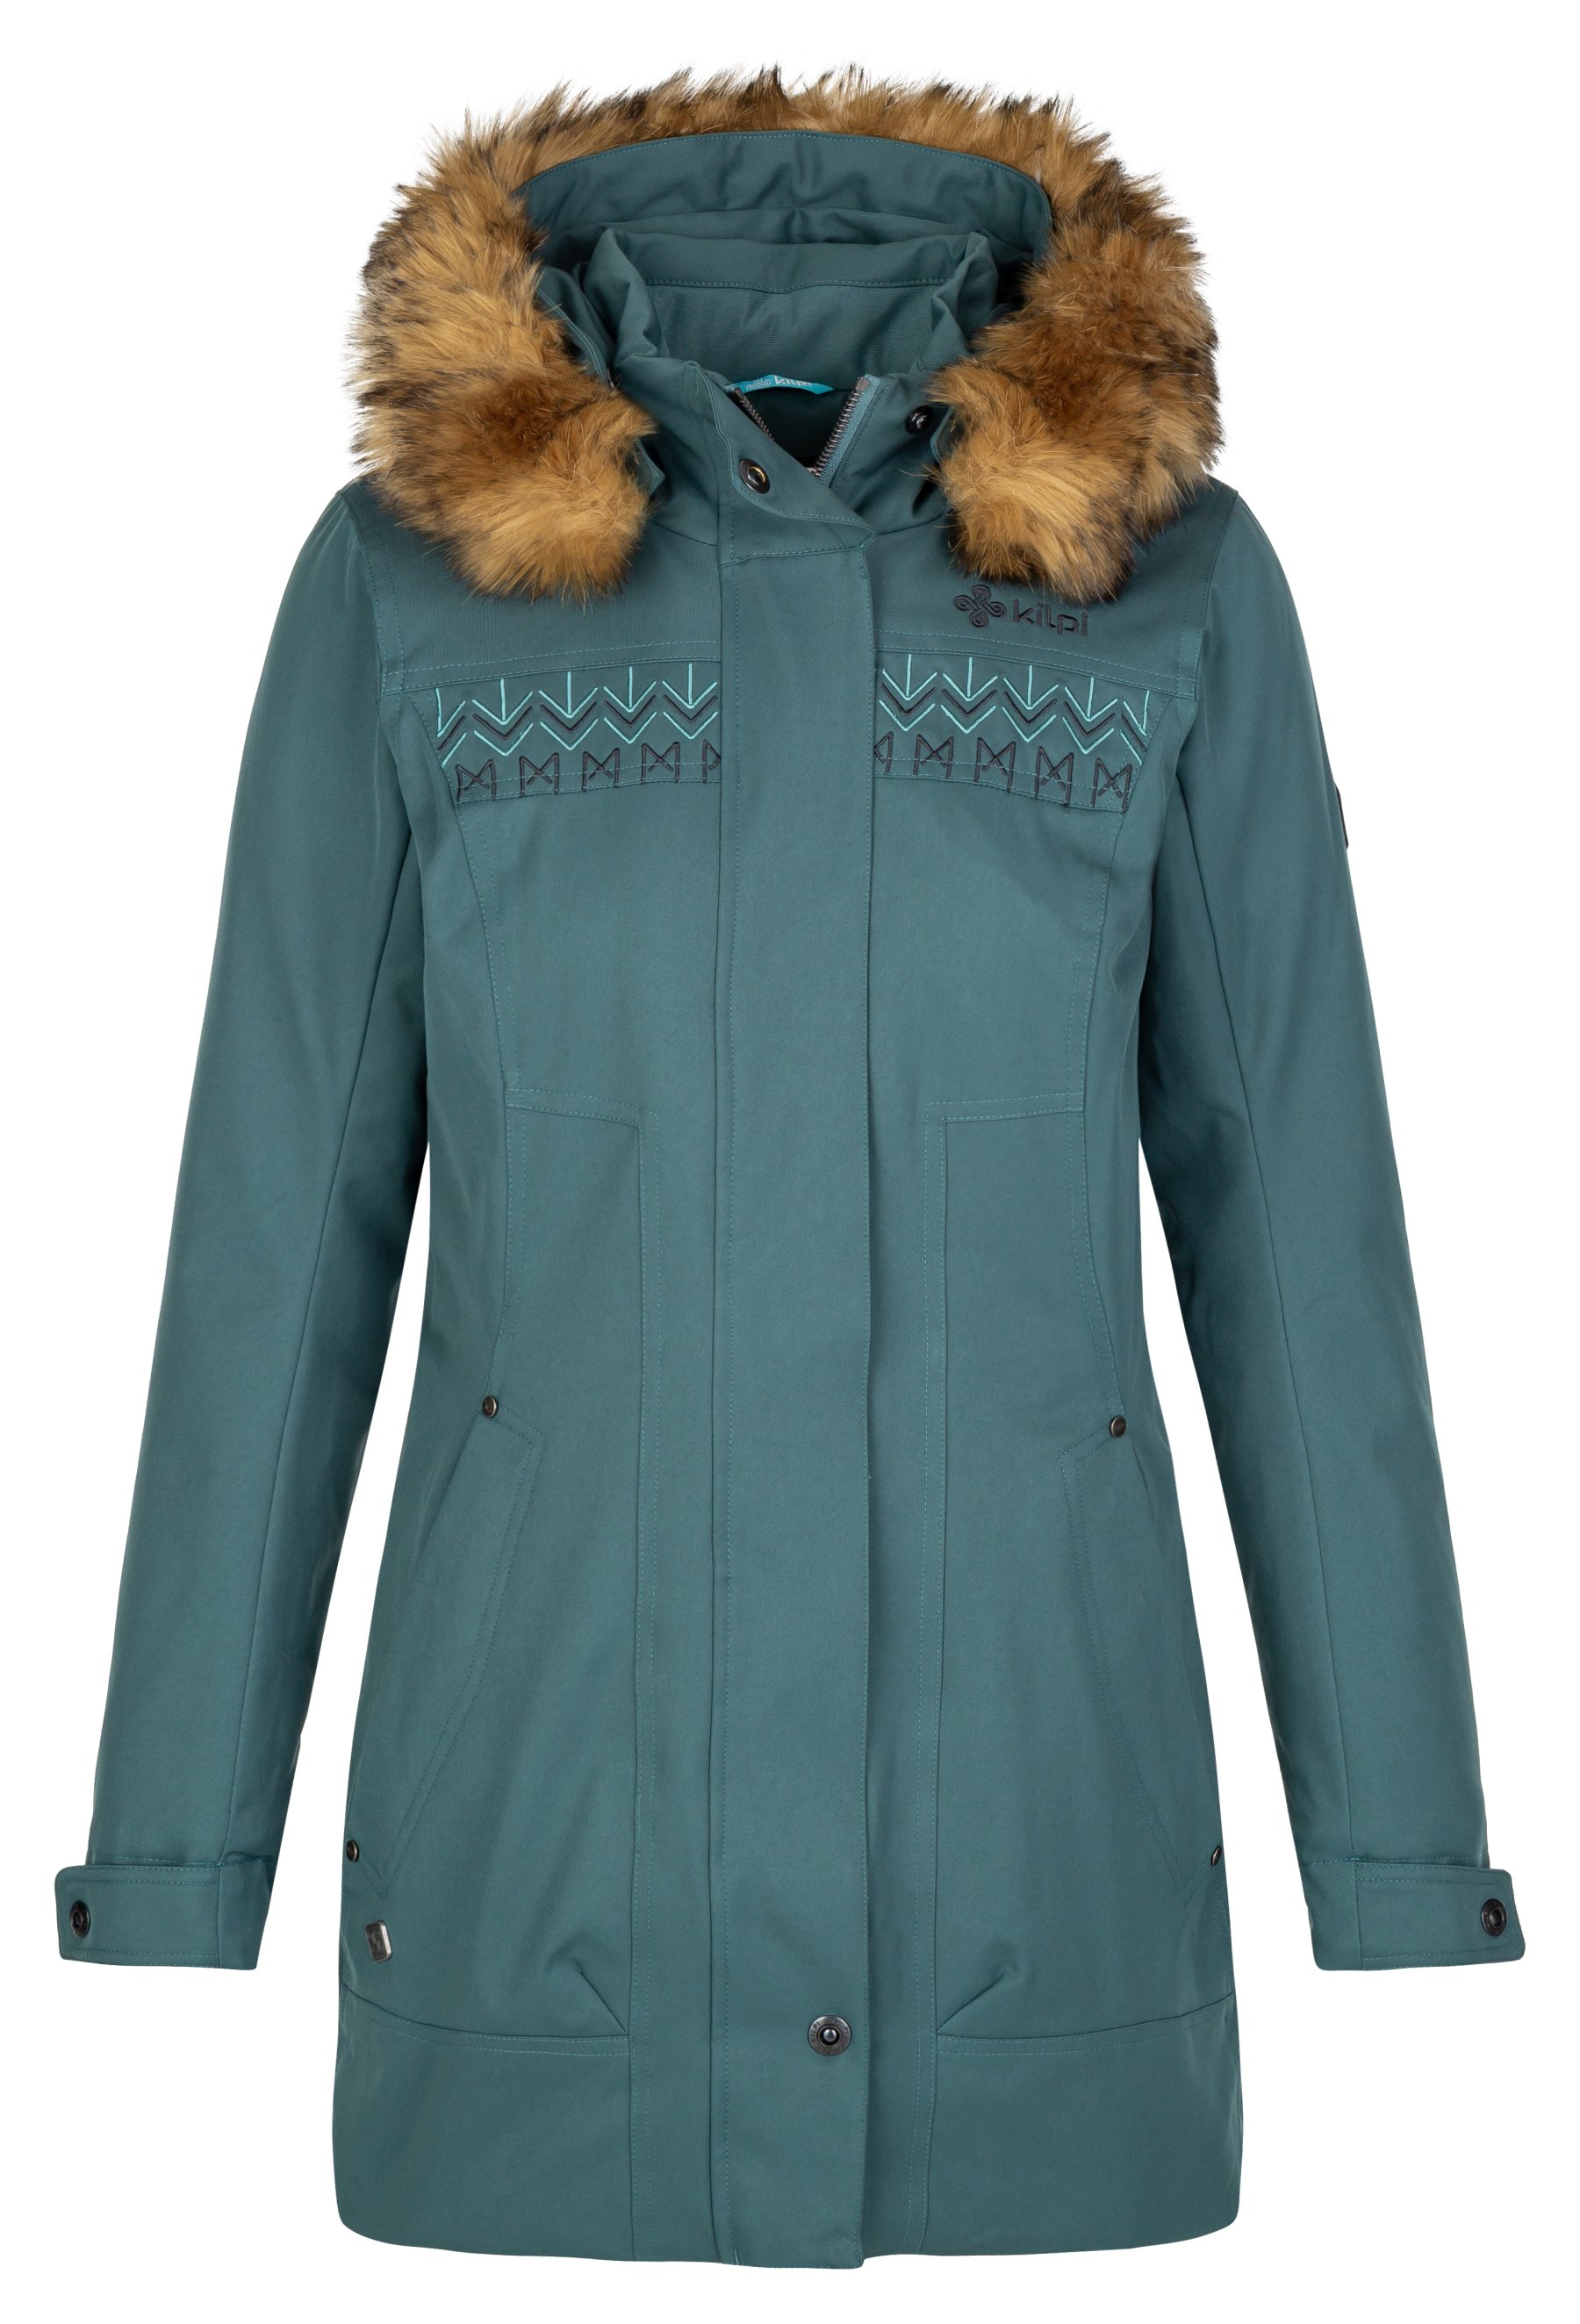 Kilpi dámský zimní kabát Peru-W Barva: tmavě zelená, Velikost: 46